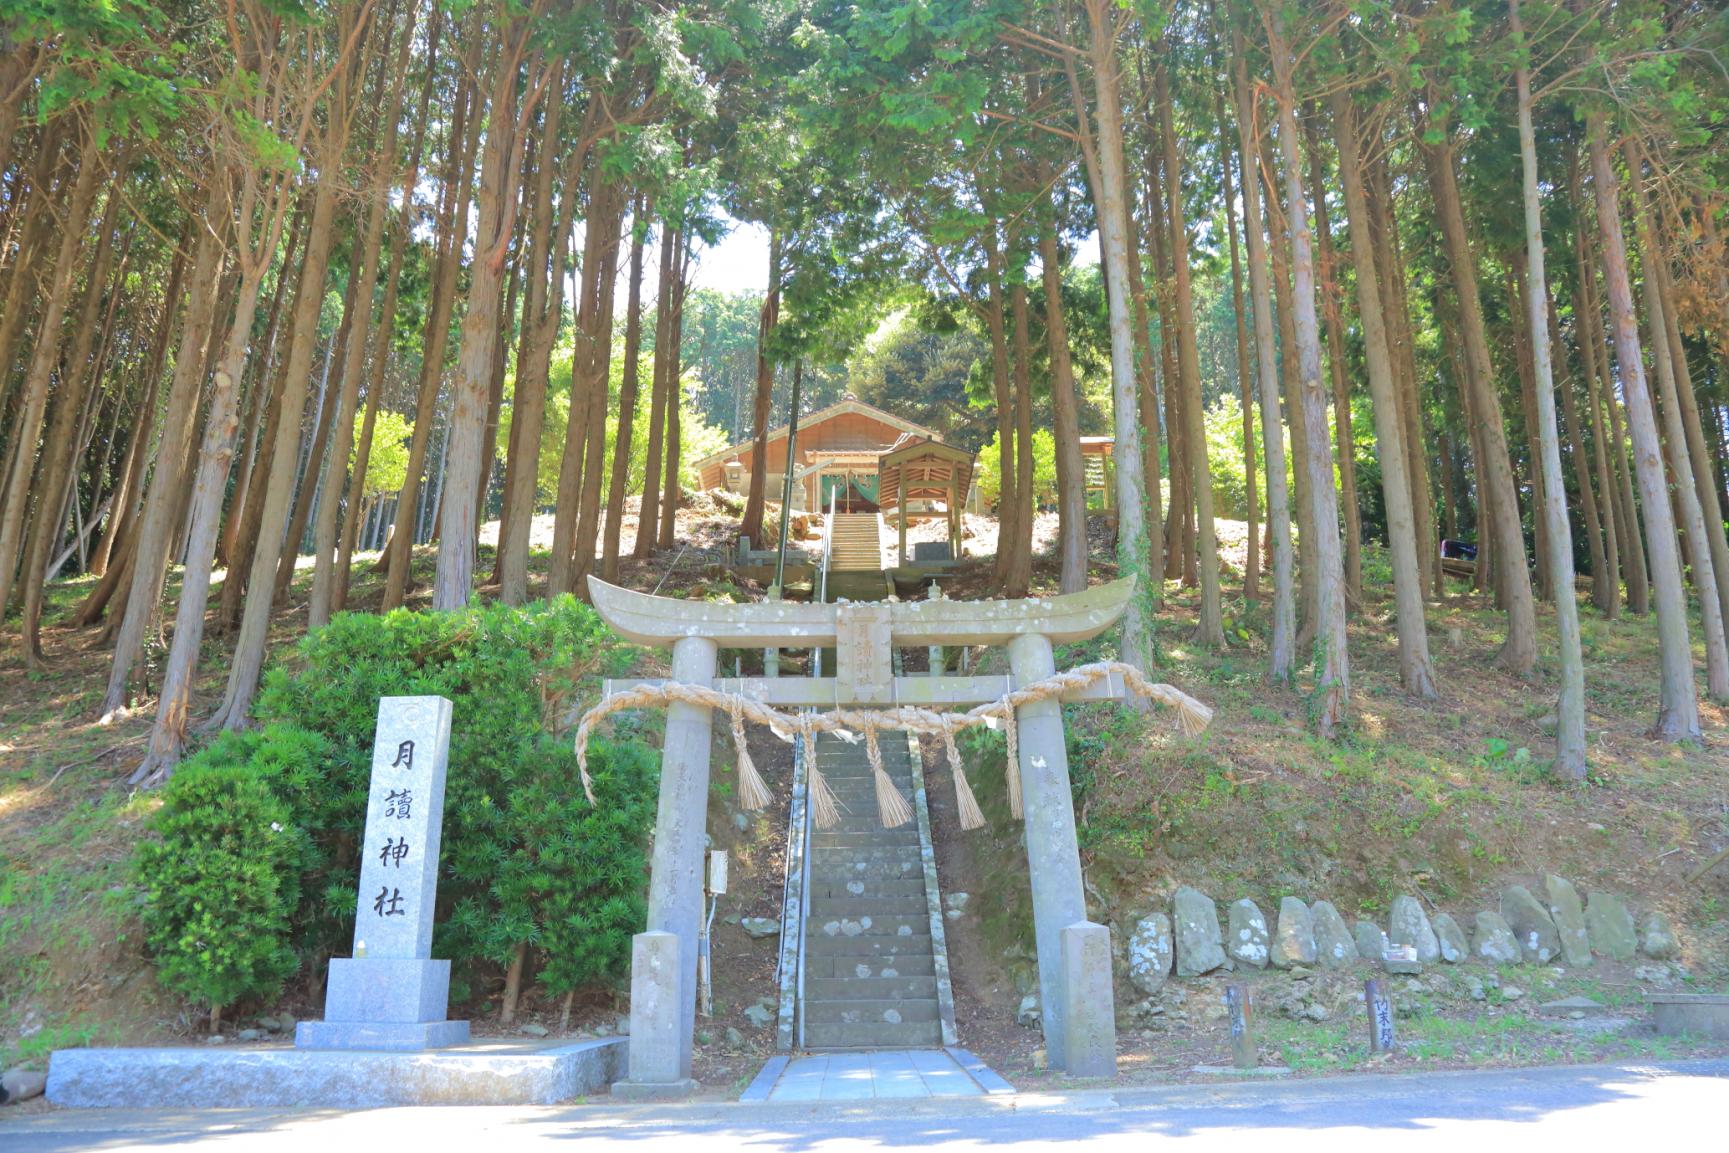 【Day 3】Tsukiyomi Shrine-1